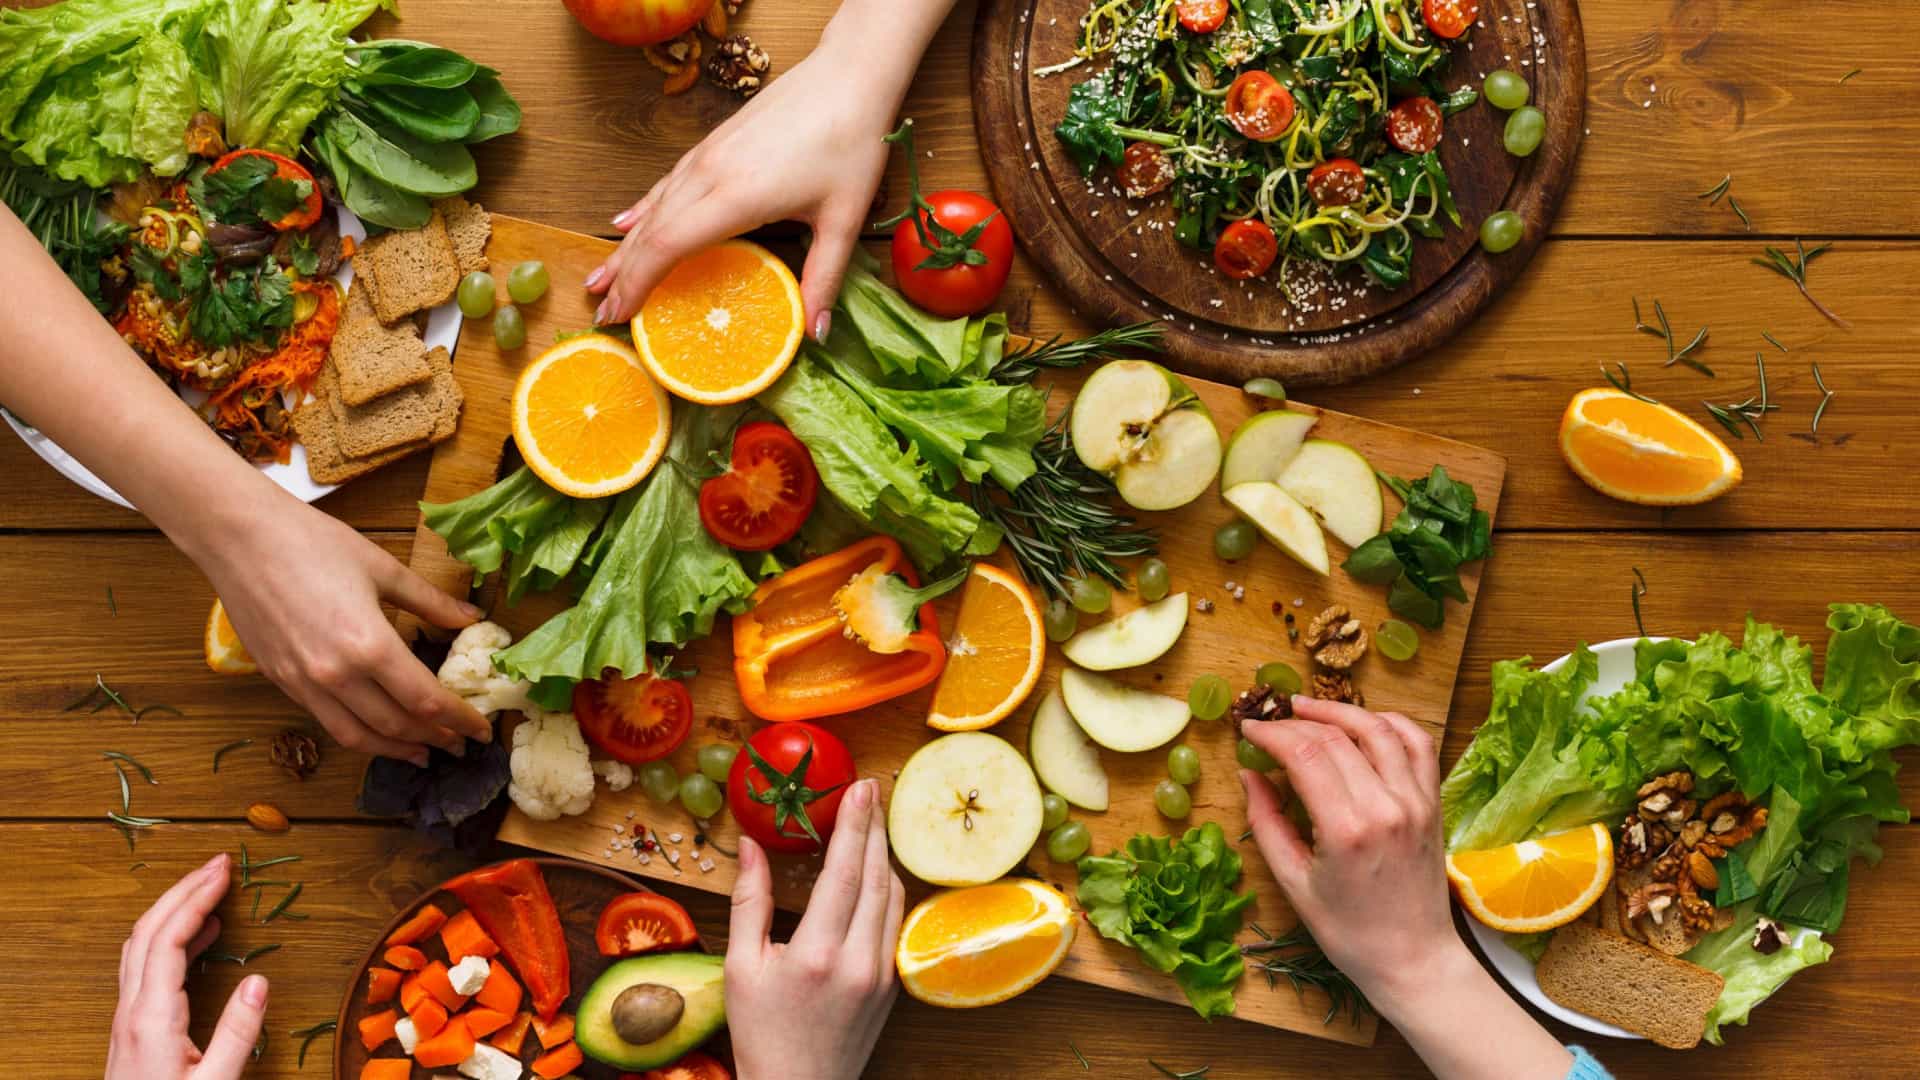 Dieta vegetariana pode reduzir risco de AVC em 75%, diz estudo